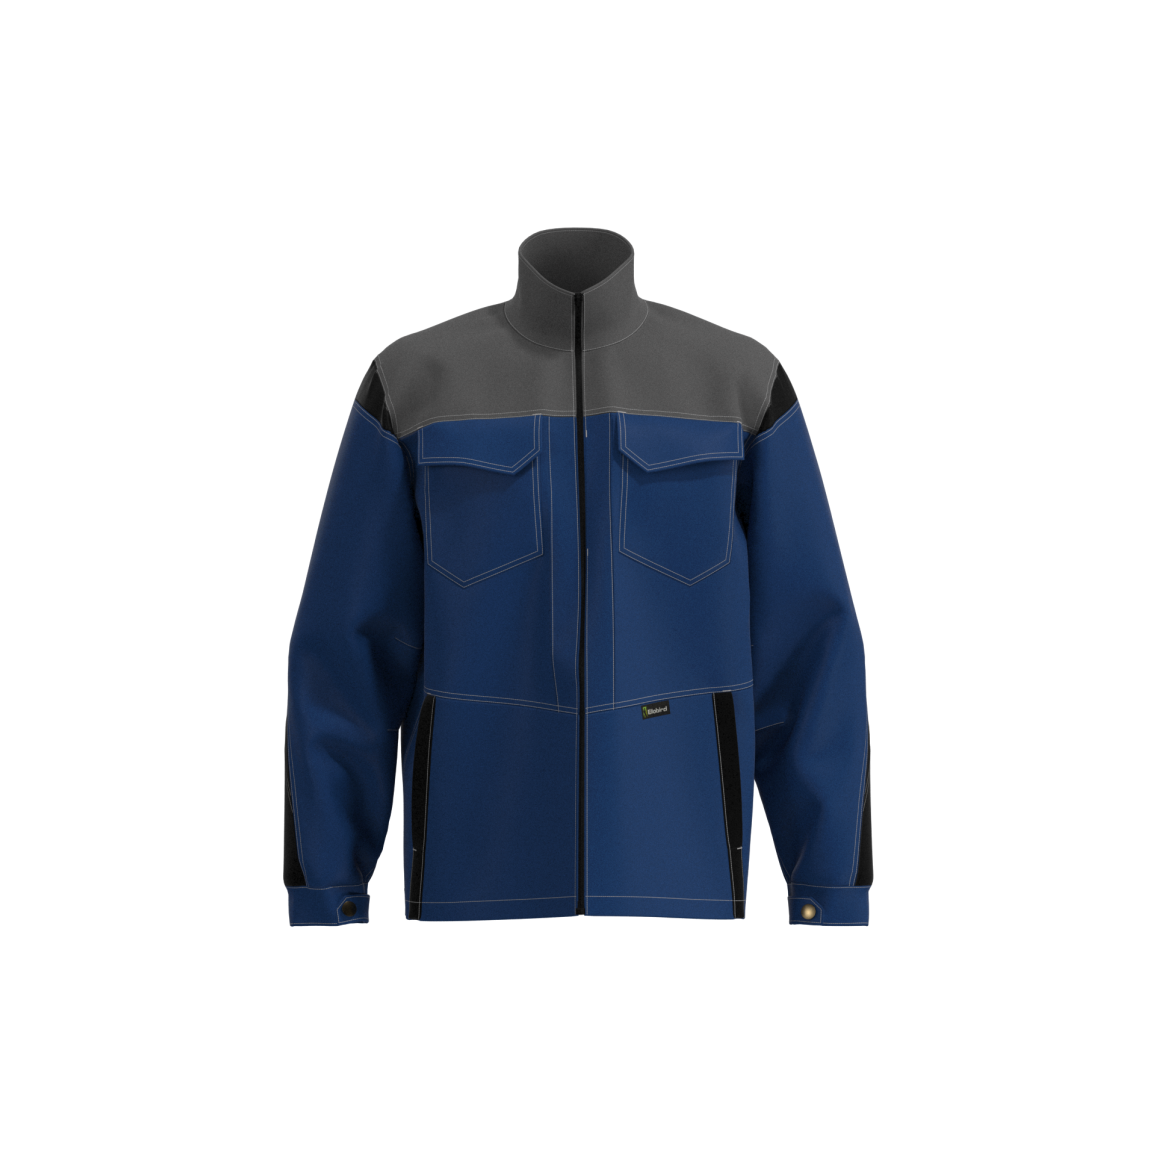 Customized Jacket Safety Construction Clothing Featured Image